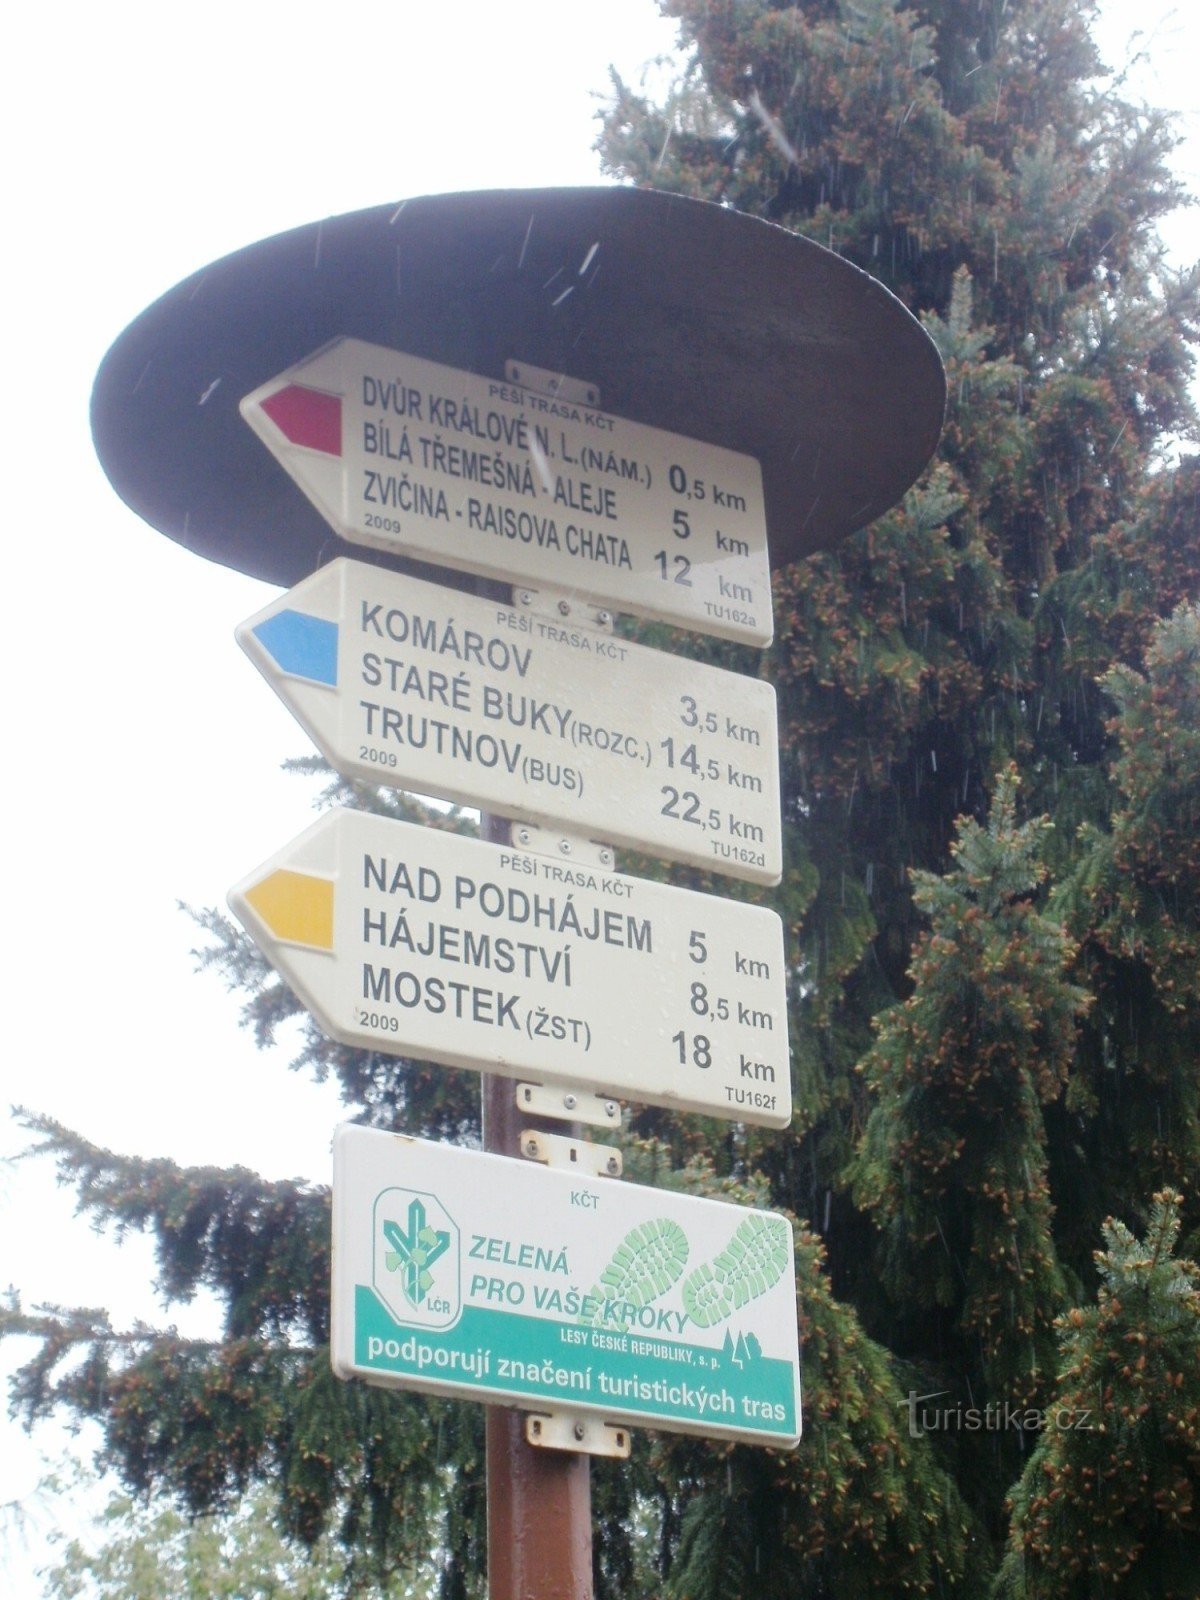 Rozdroże turystyczne Dvur Králové - dworzec autobusowy